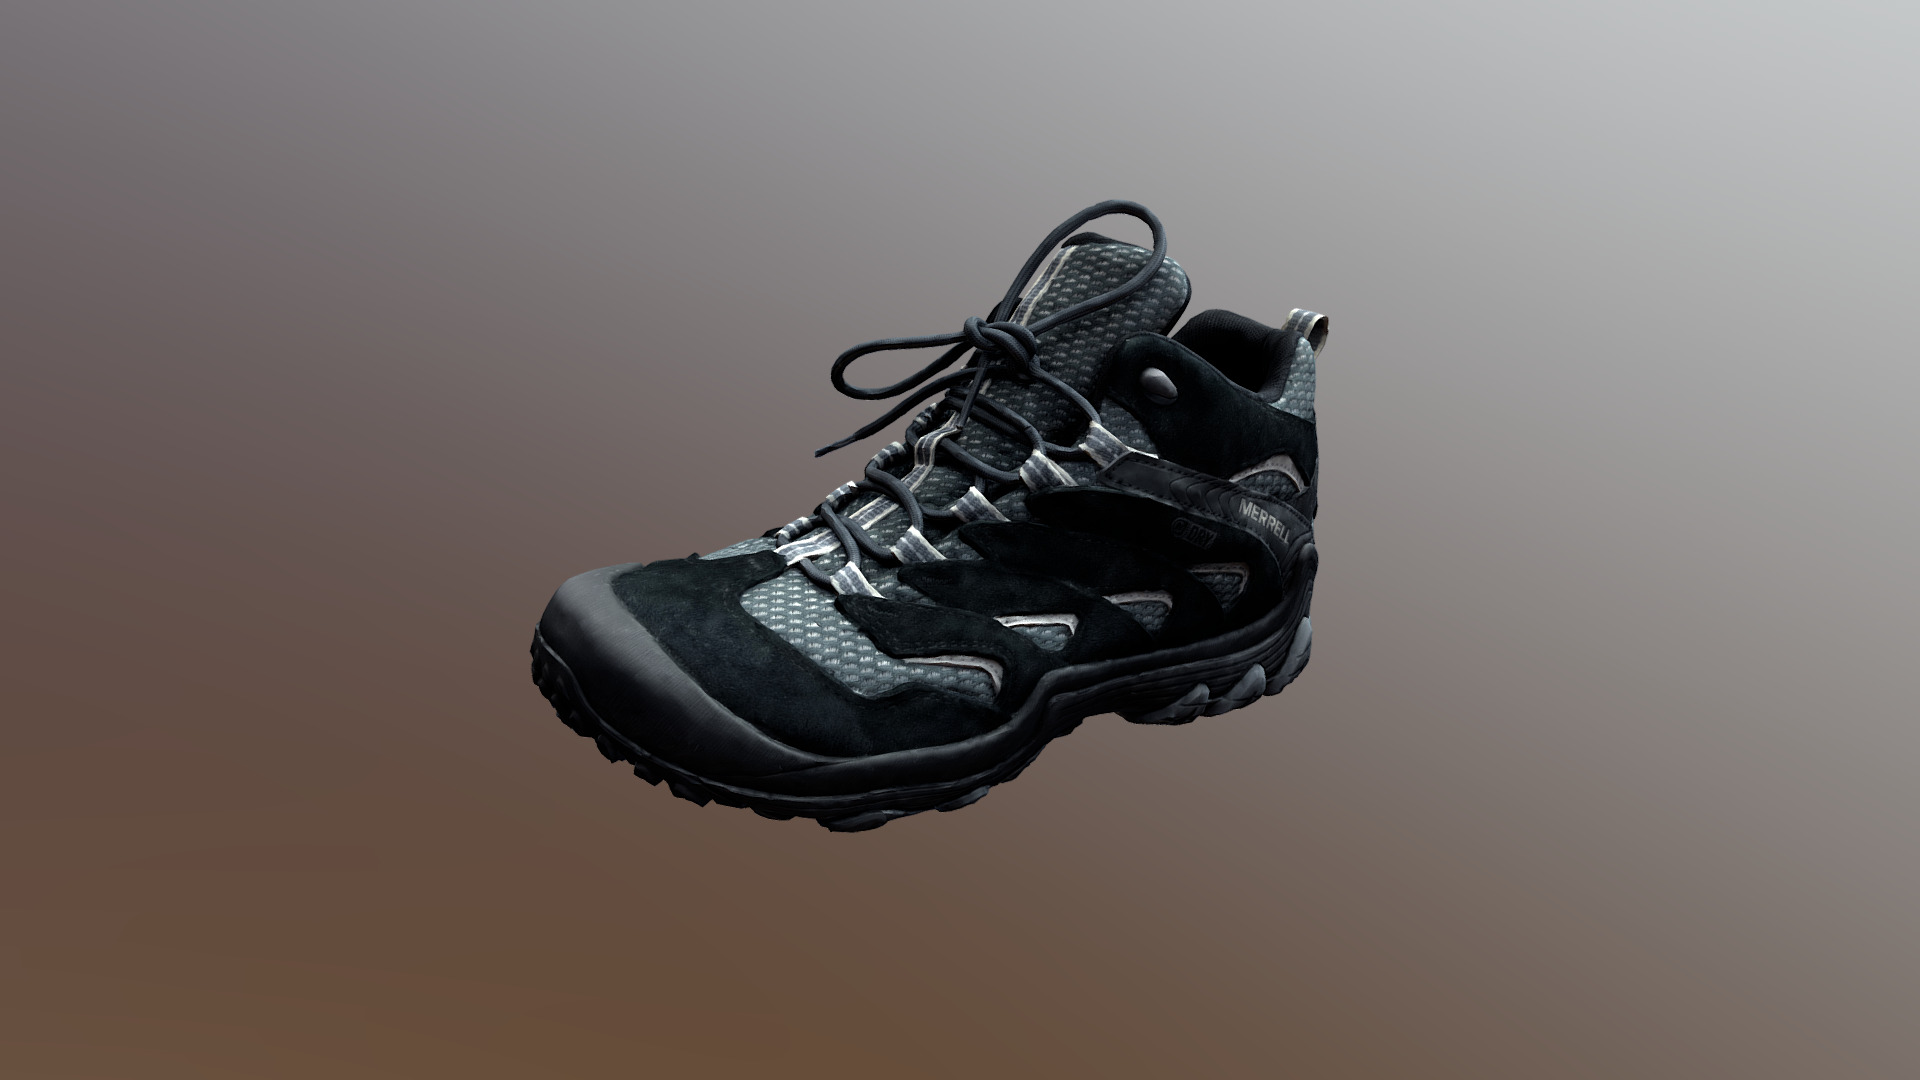 Merrel Shoe - 3D model by deneal 3d model